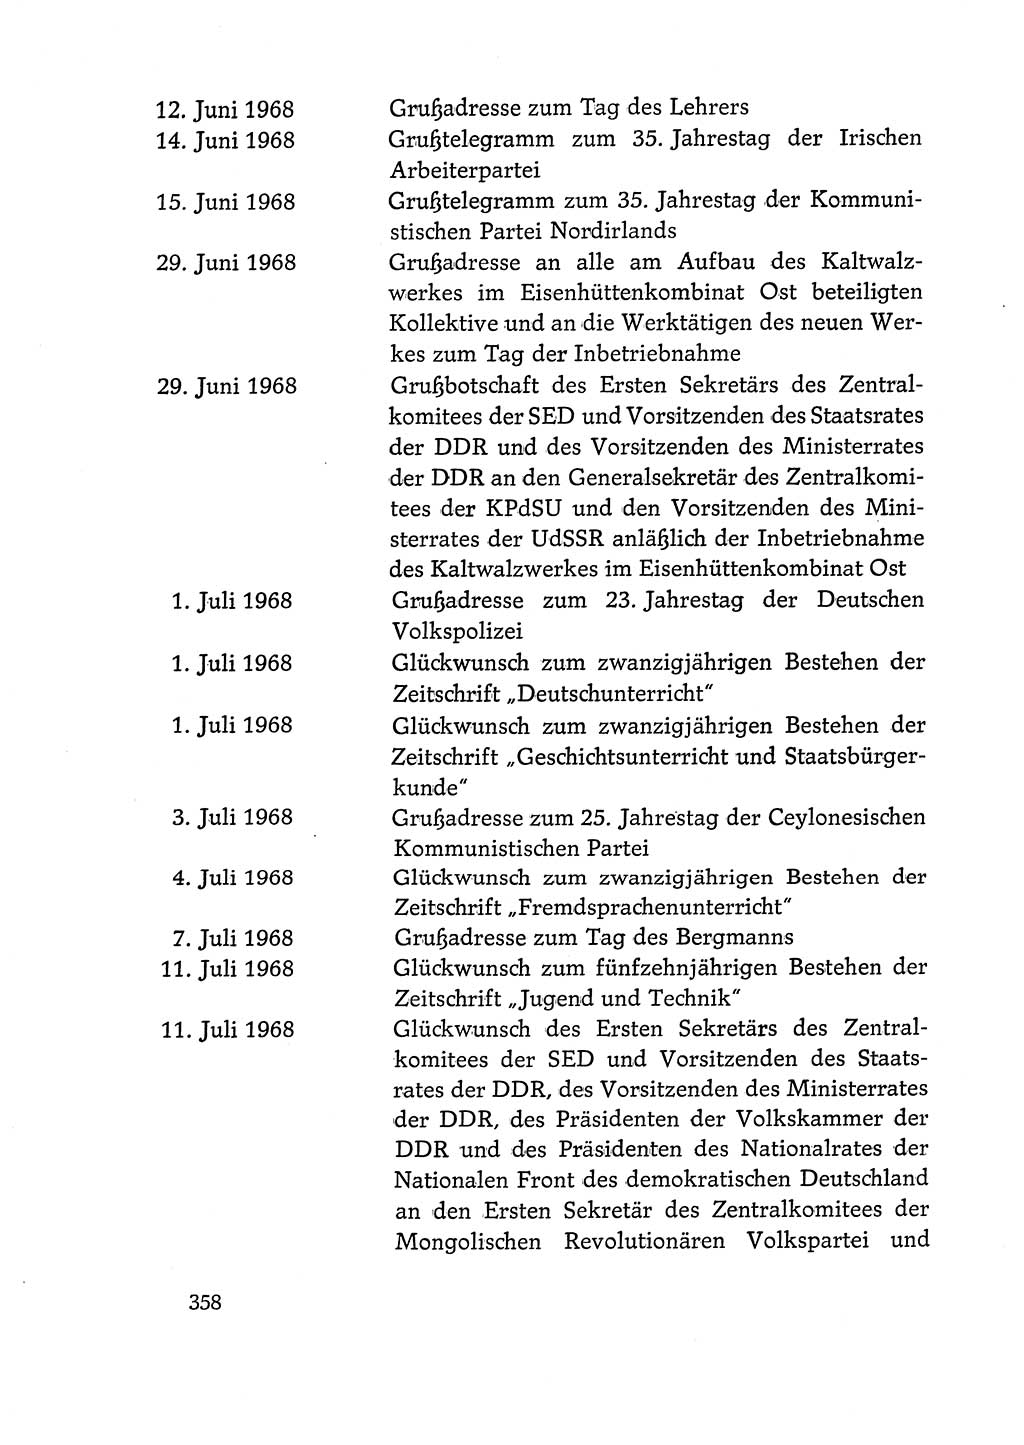 Dokumente der Sozialistischen Einheitspartei Deutschlands (SED) [Deutsche Demokratische Republik (DDR)] 1968-1969, Seite 358 (Dok. SED DDR 1968-1969, S. 358)